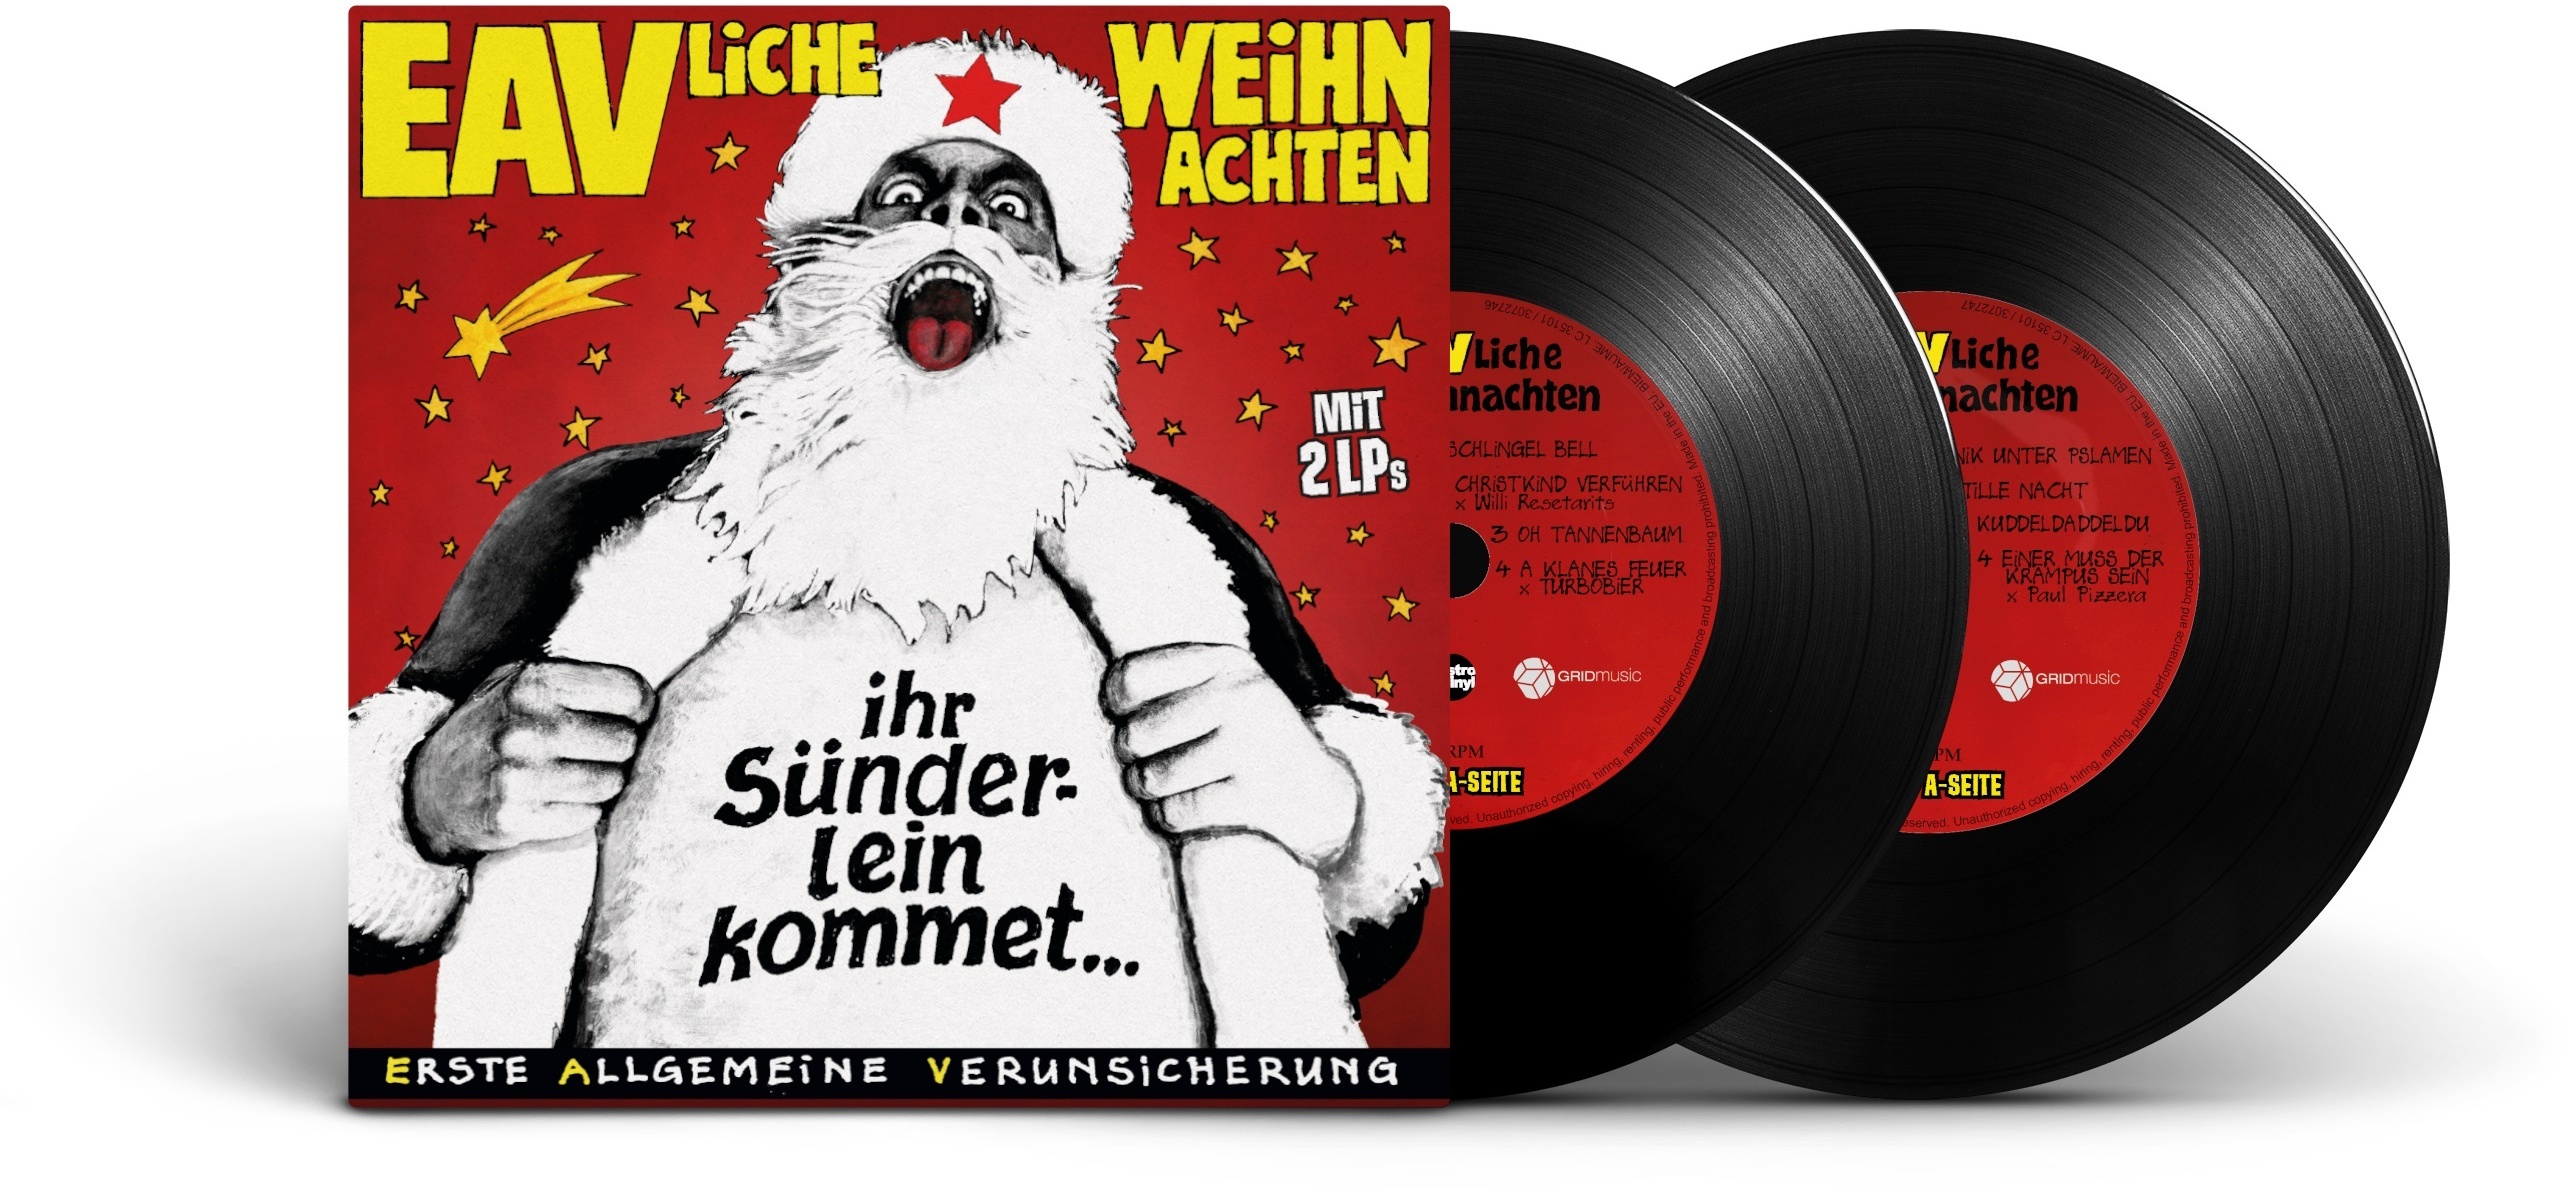 EAVliche Weihnachten - Ihr Sünderlein kommet (2 LPs) (Vinyl) - Erste Allgemeine Verunsicherung. (LP)